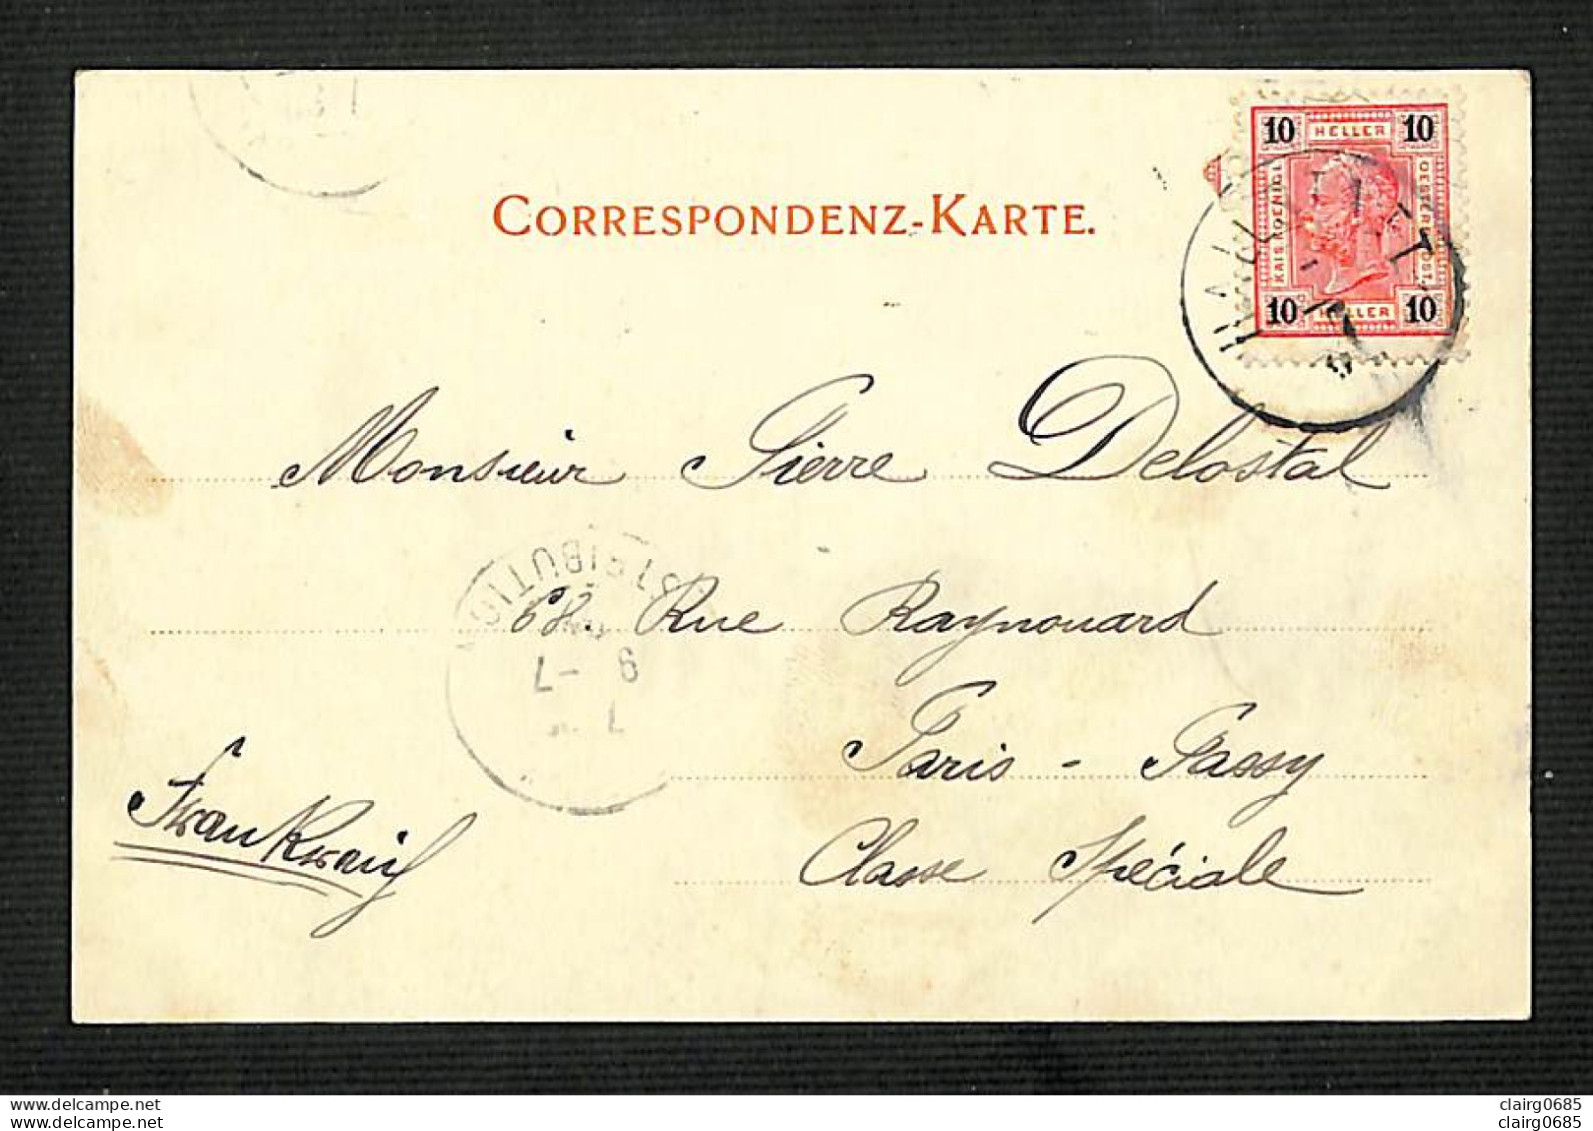 AUTRICHE - OSTERREICH - HALLSTADT  A. See - 1902 - RARE - Hallstatt